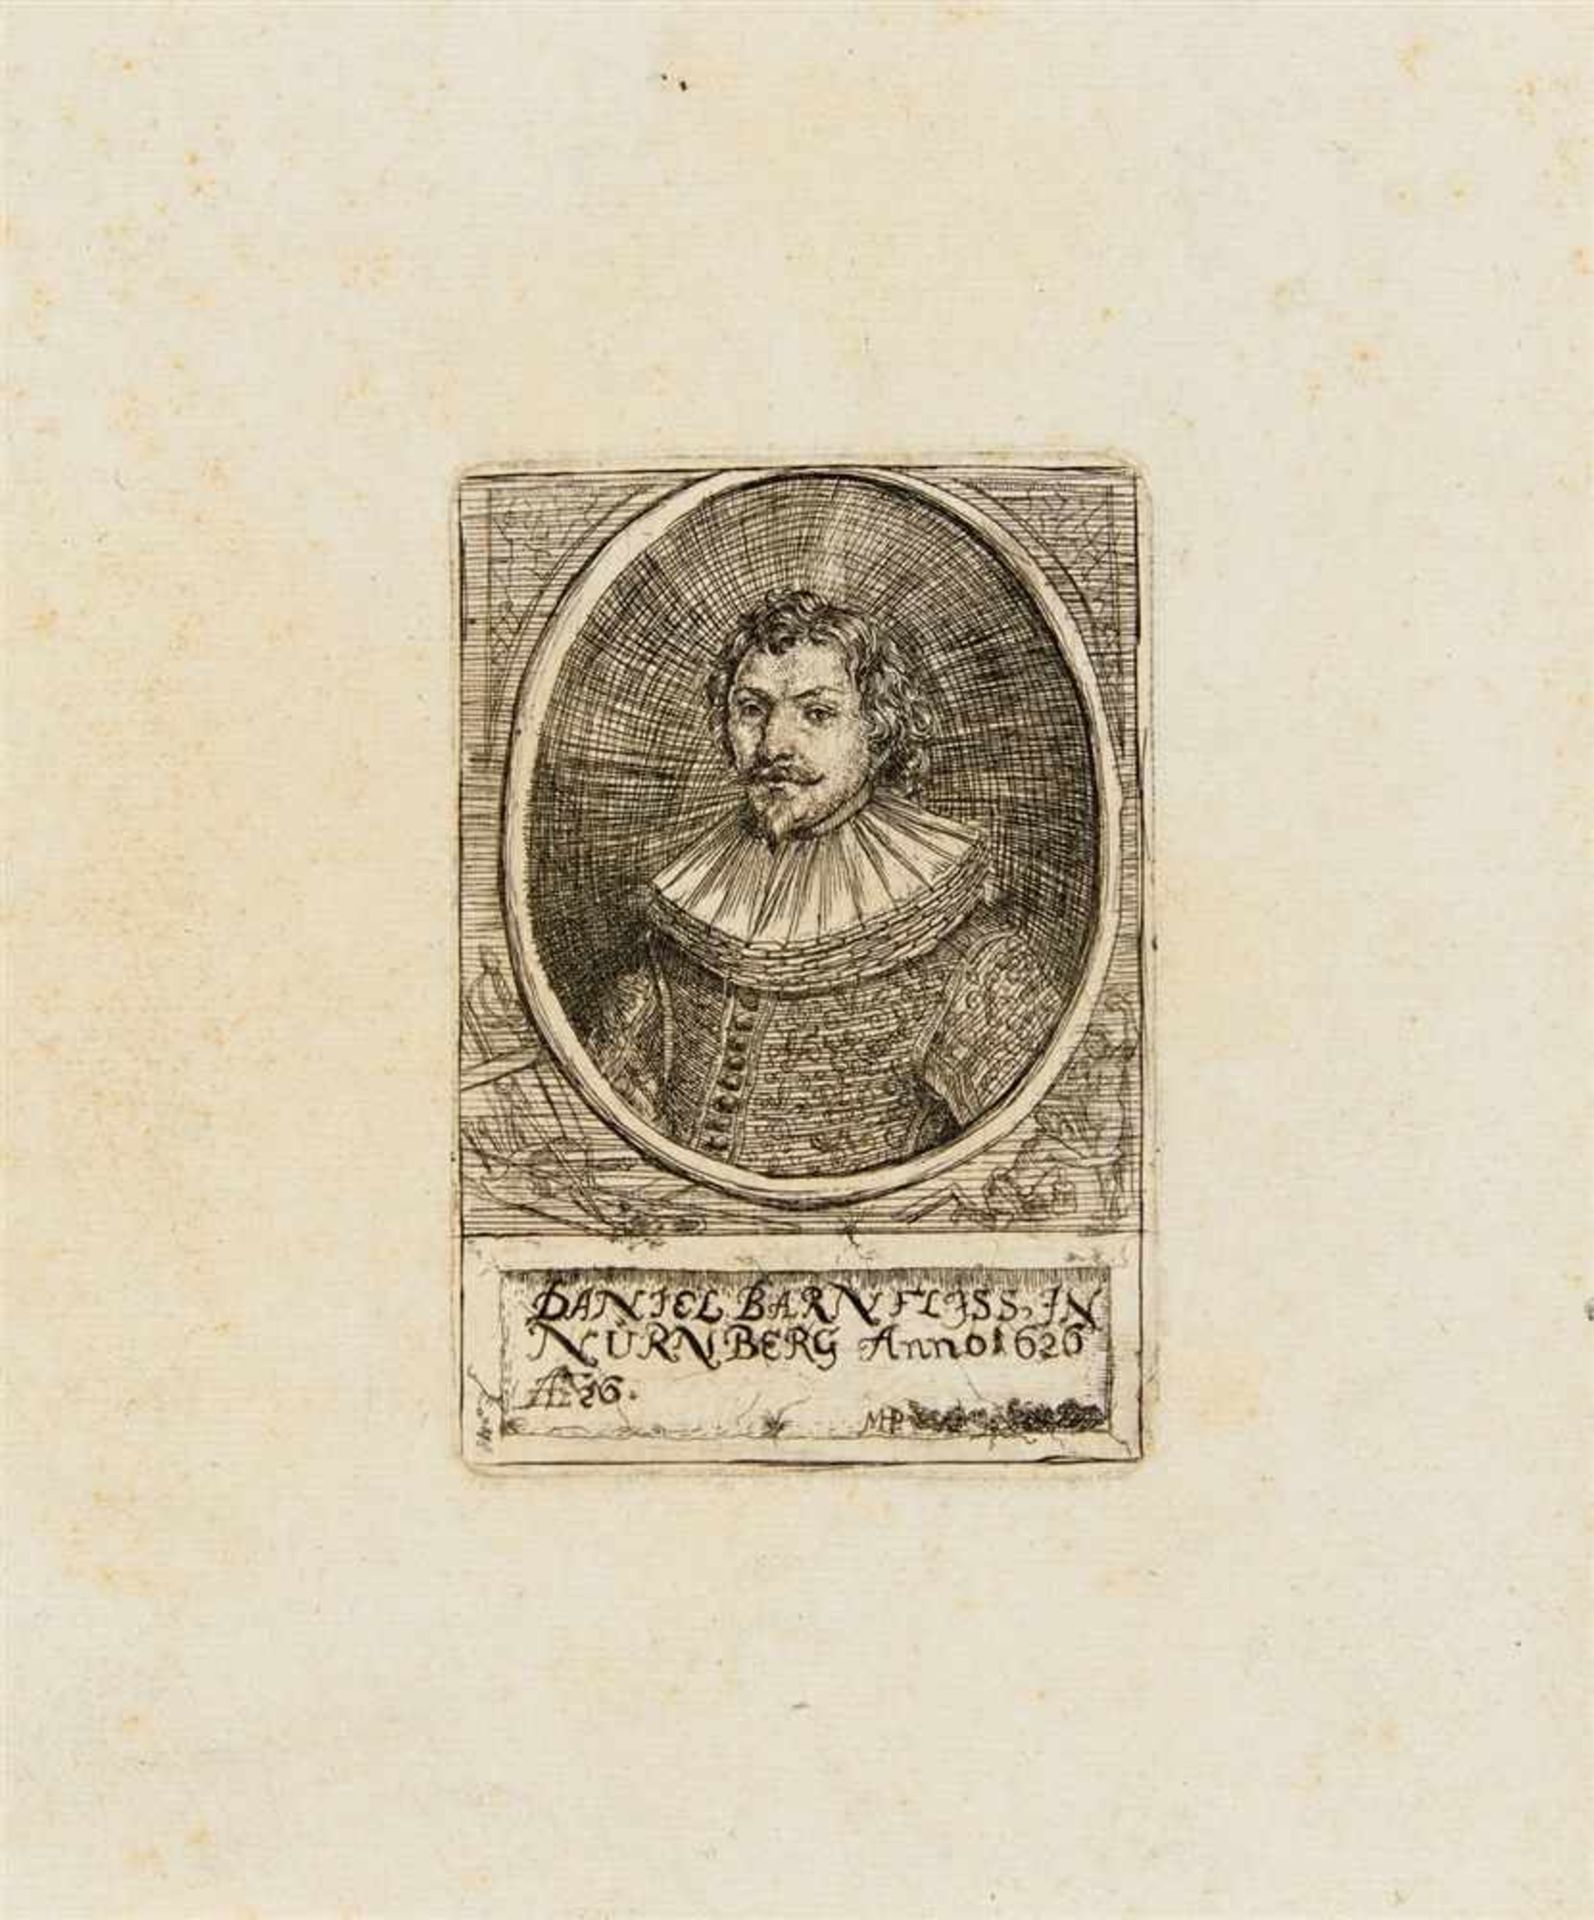 MONOGRAMMIST MHP Deutschland, tätig 2. Hälfte 17. Jahrhunderts Bildnis des Daniel Barnfliss.